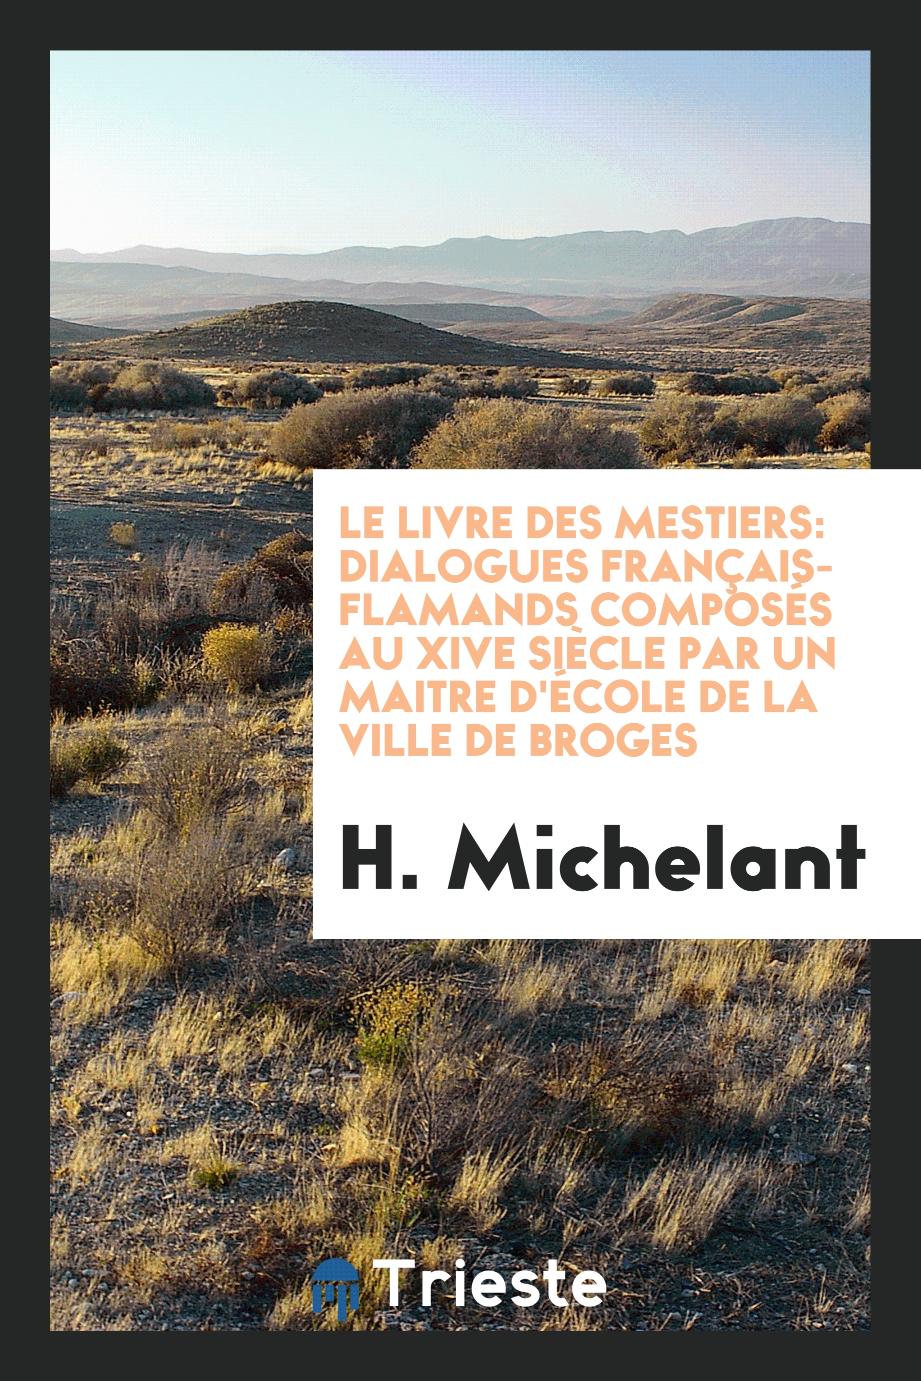 Le Livre des Mestiers: Dialogues Français-Flamands Composés au XIVe Siècle par un Maitre d'École de la Ville de Broges